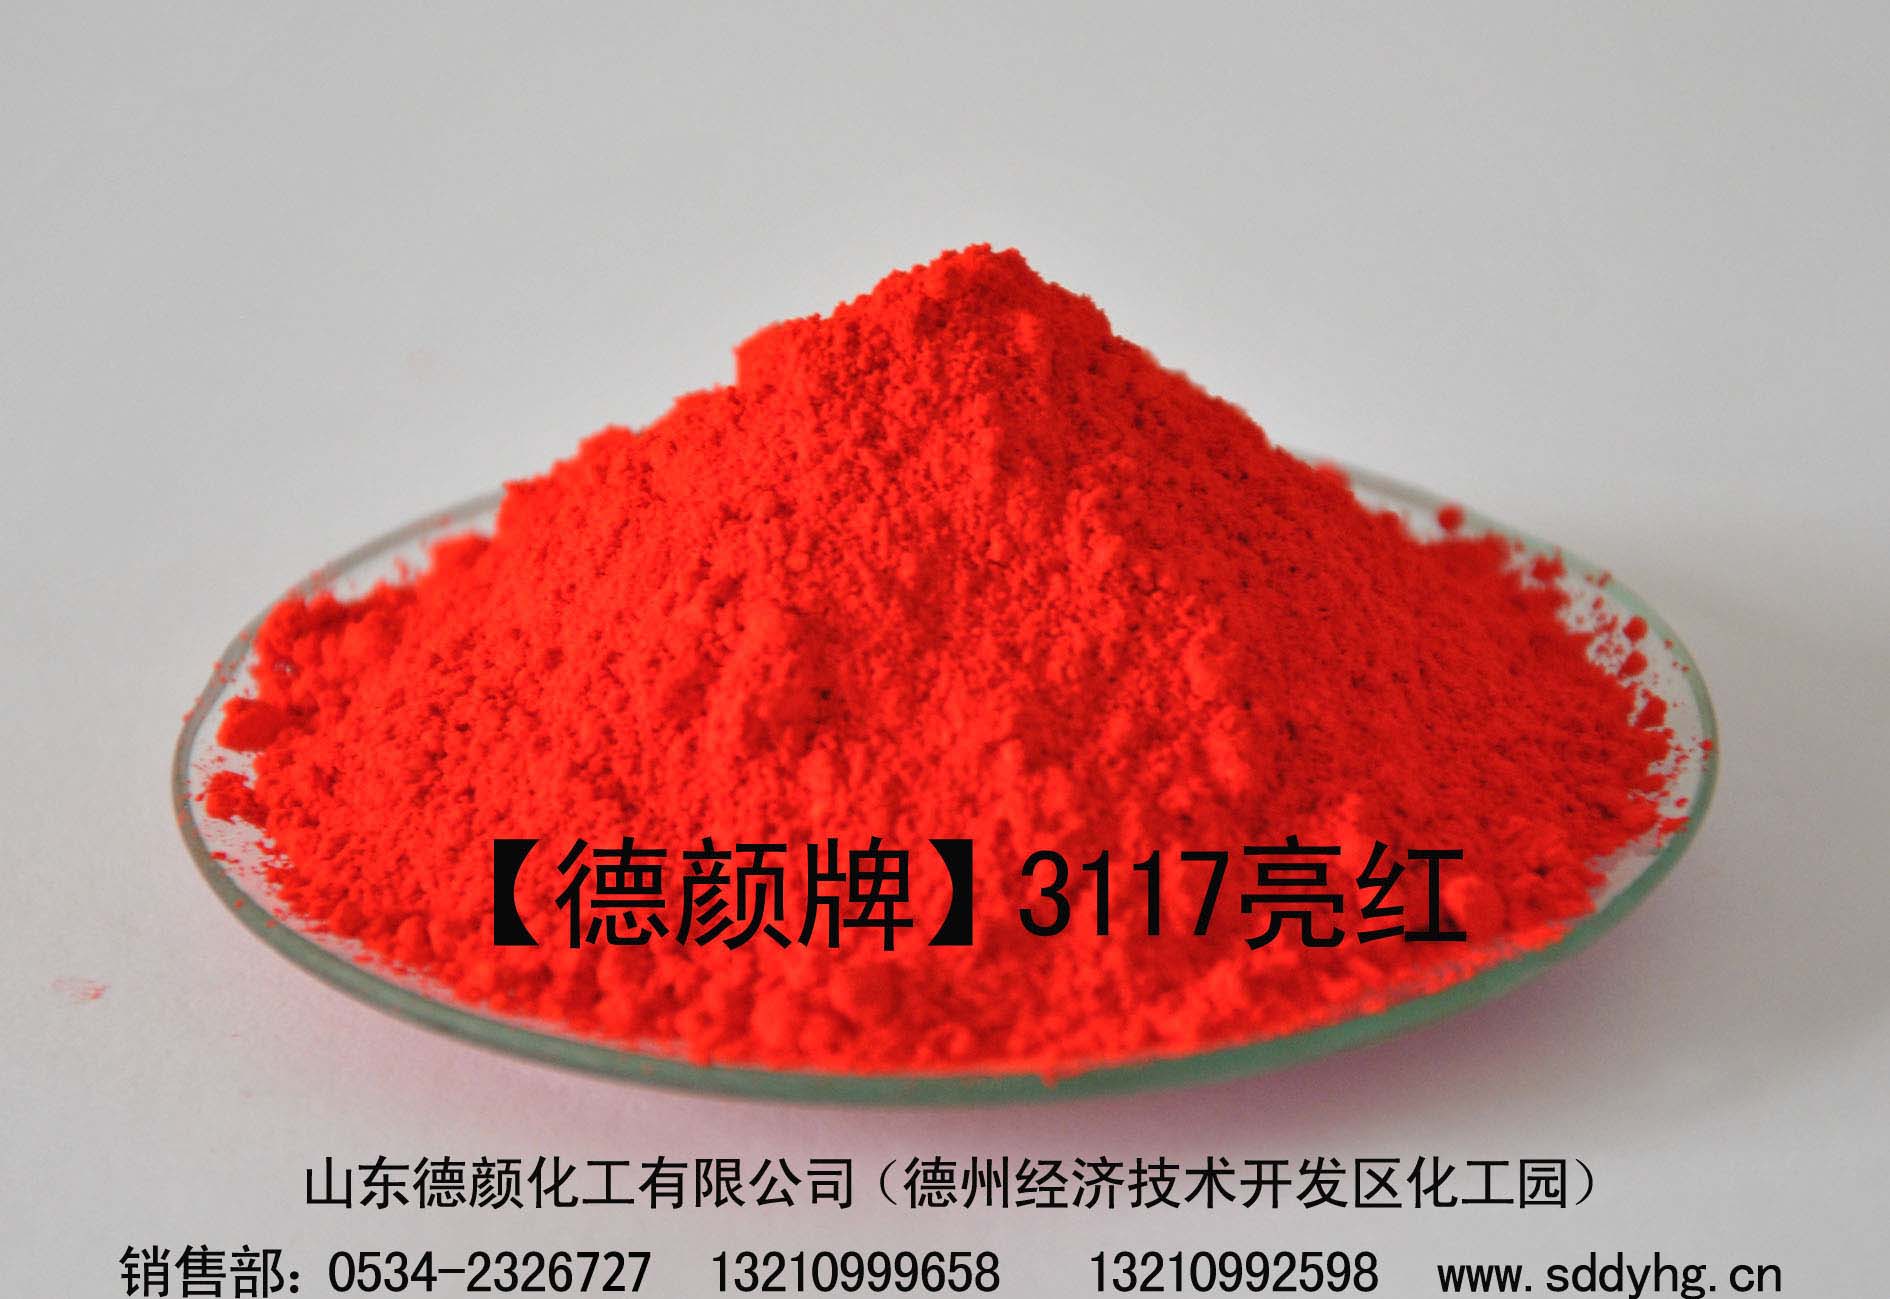 【3117亮红】山东德颜化工专业生产有机颜料质优价廉